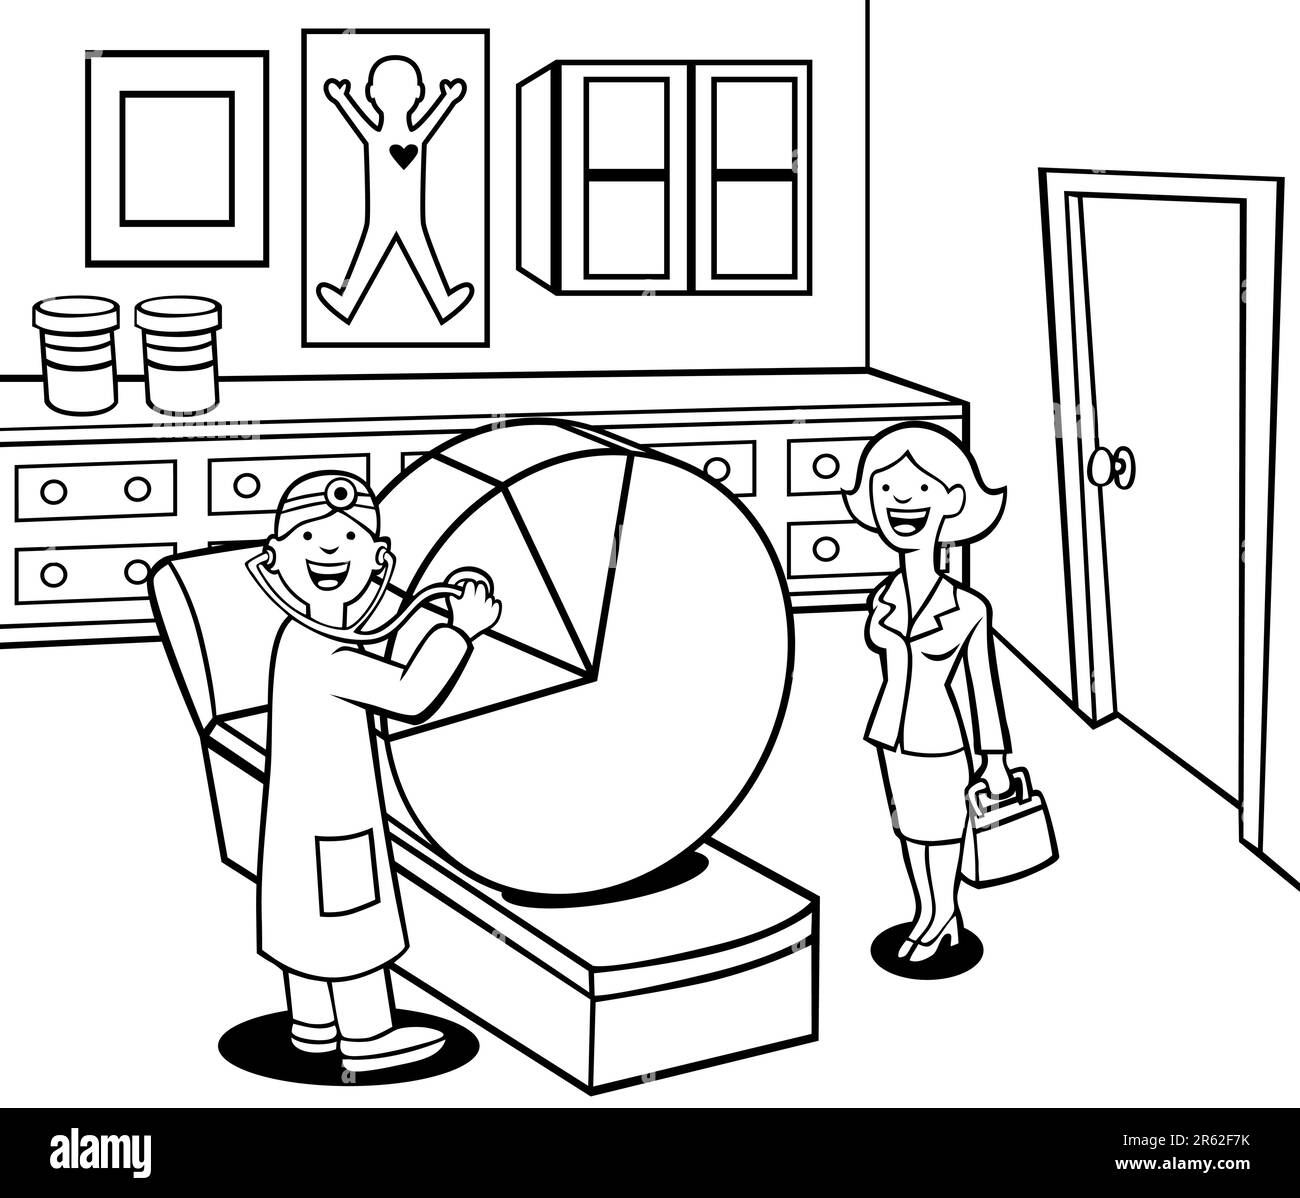 Cartone animato di un medico che controlla un grafico a torta mentre una donna professionista guarda. Illustrazione Vettoriale